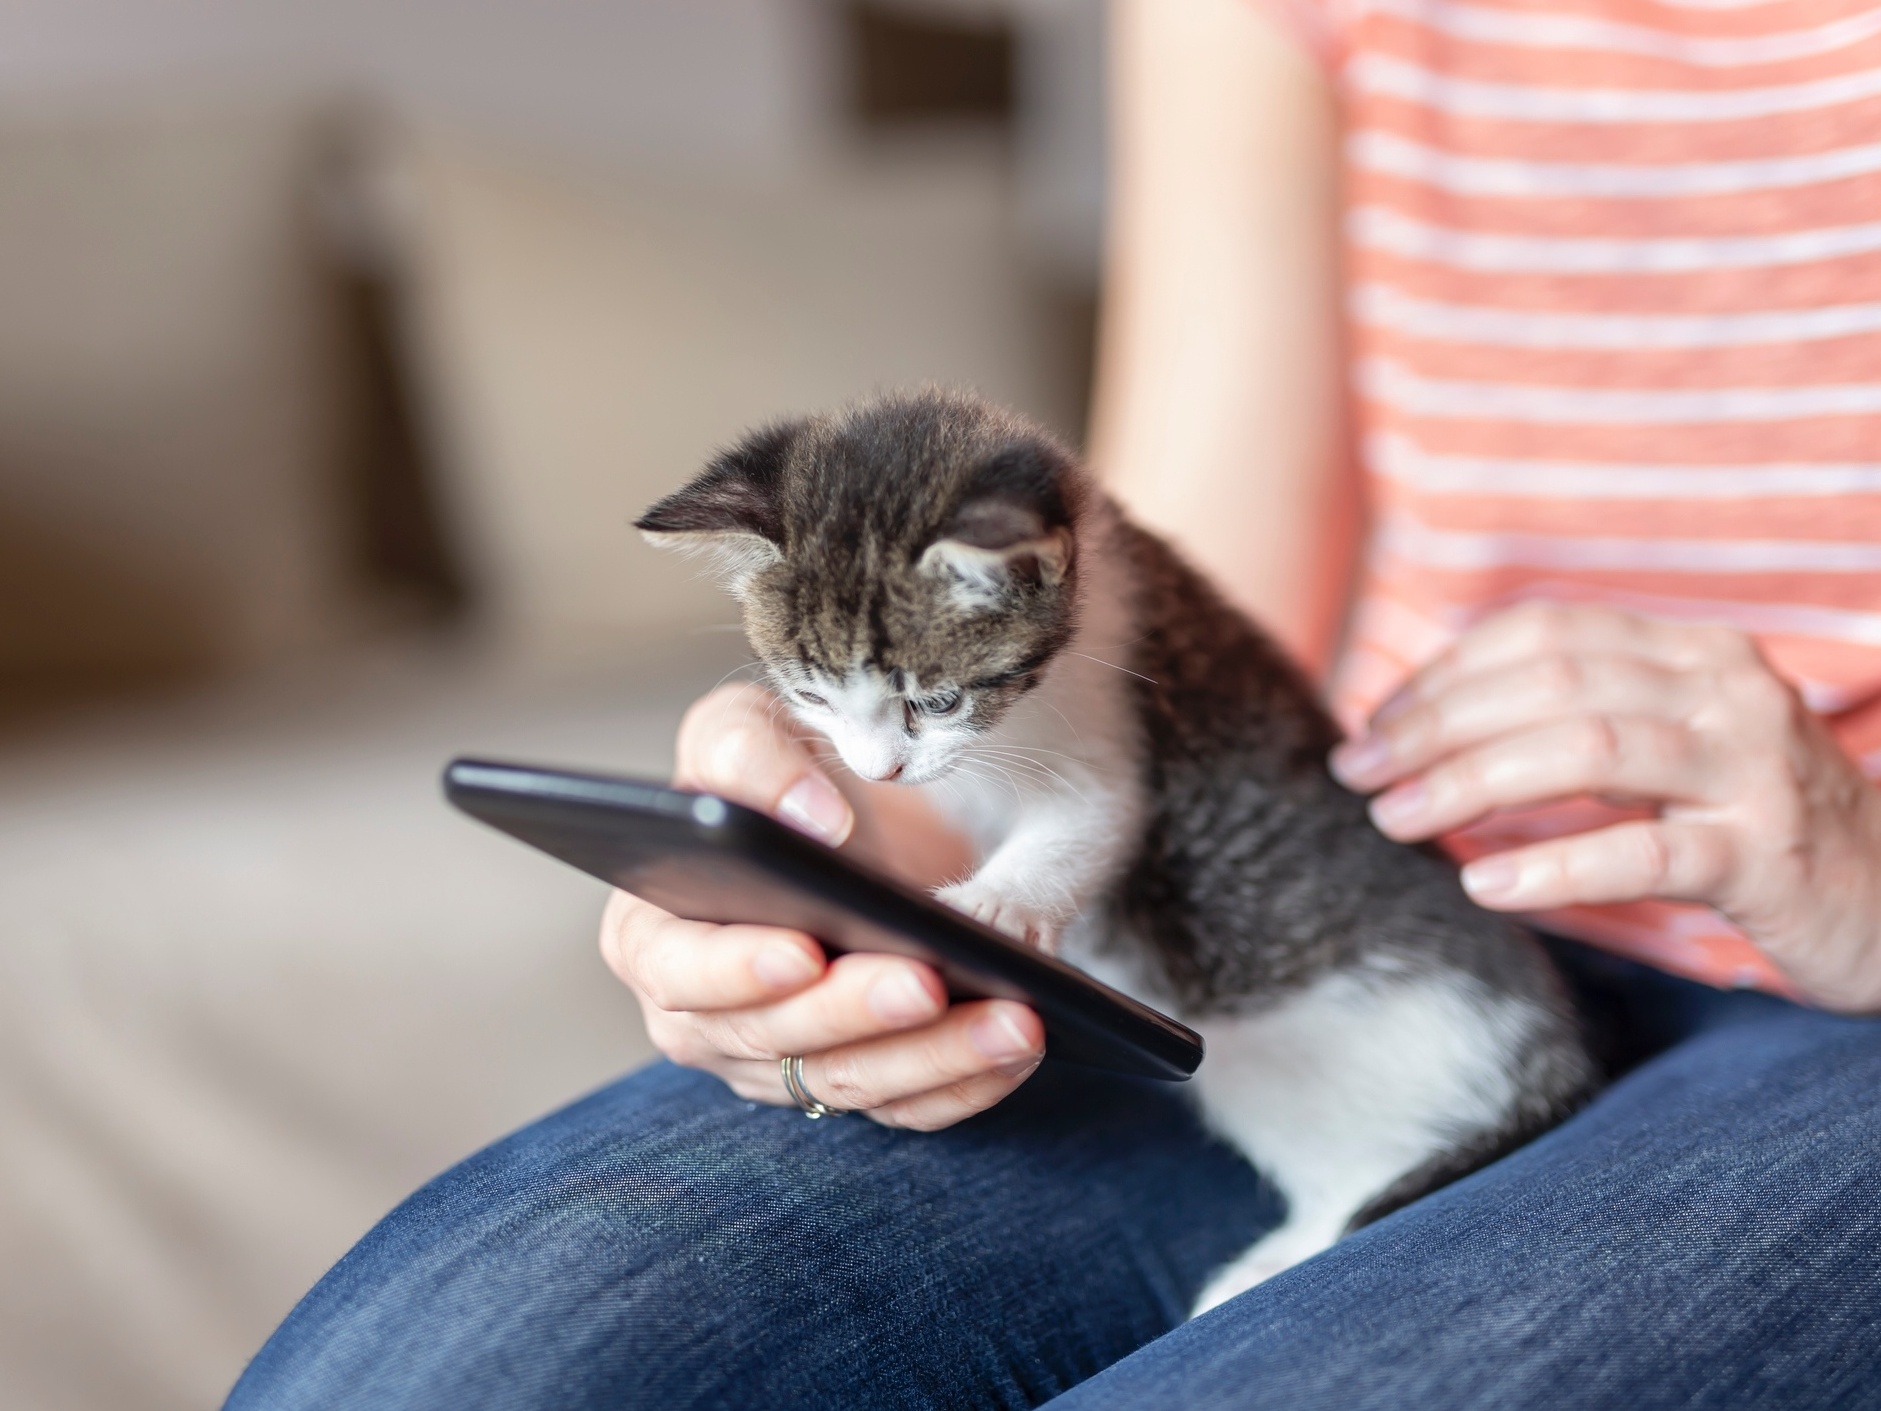 Adeus à bolinha: gatos já jogam no smartphone, mas isso é bom para eles? -  08/11/2020 - UOL TILT